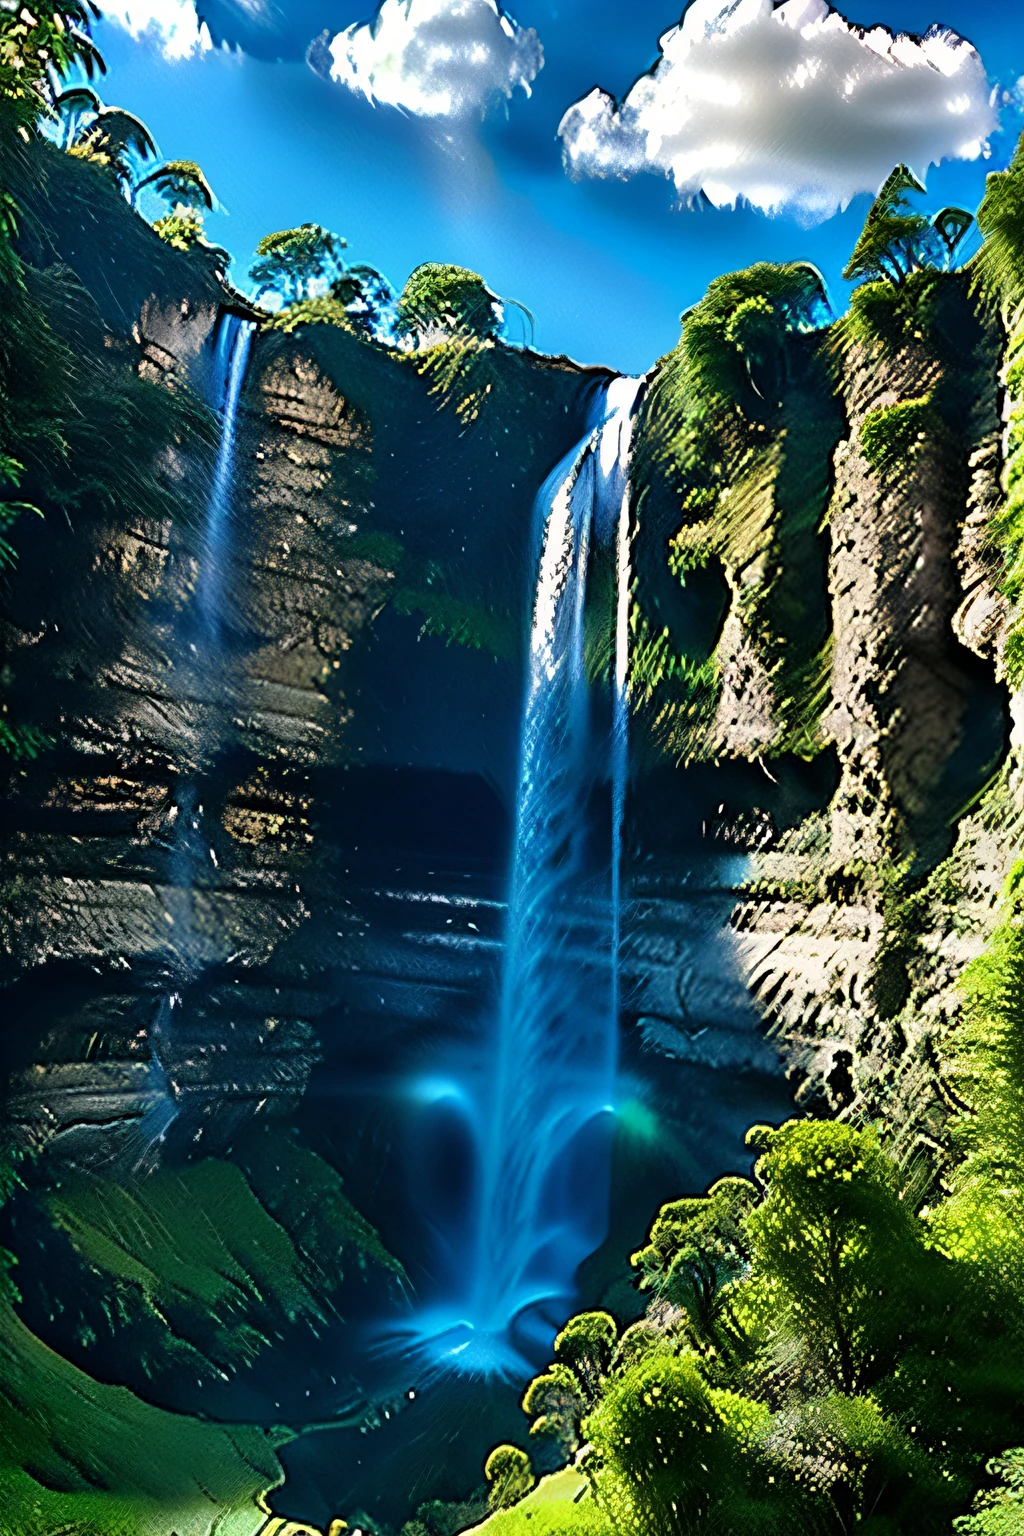 Ein Wasserfall mit reichlich Wasser，grünes Wasser, grüne Berge, blauer Himmel und weiße Wolken